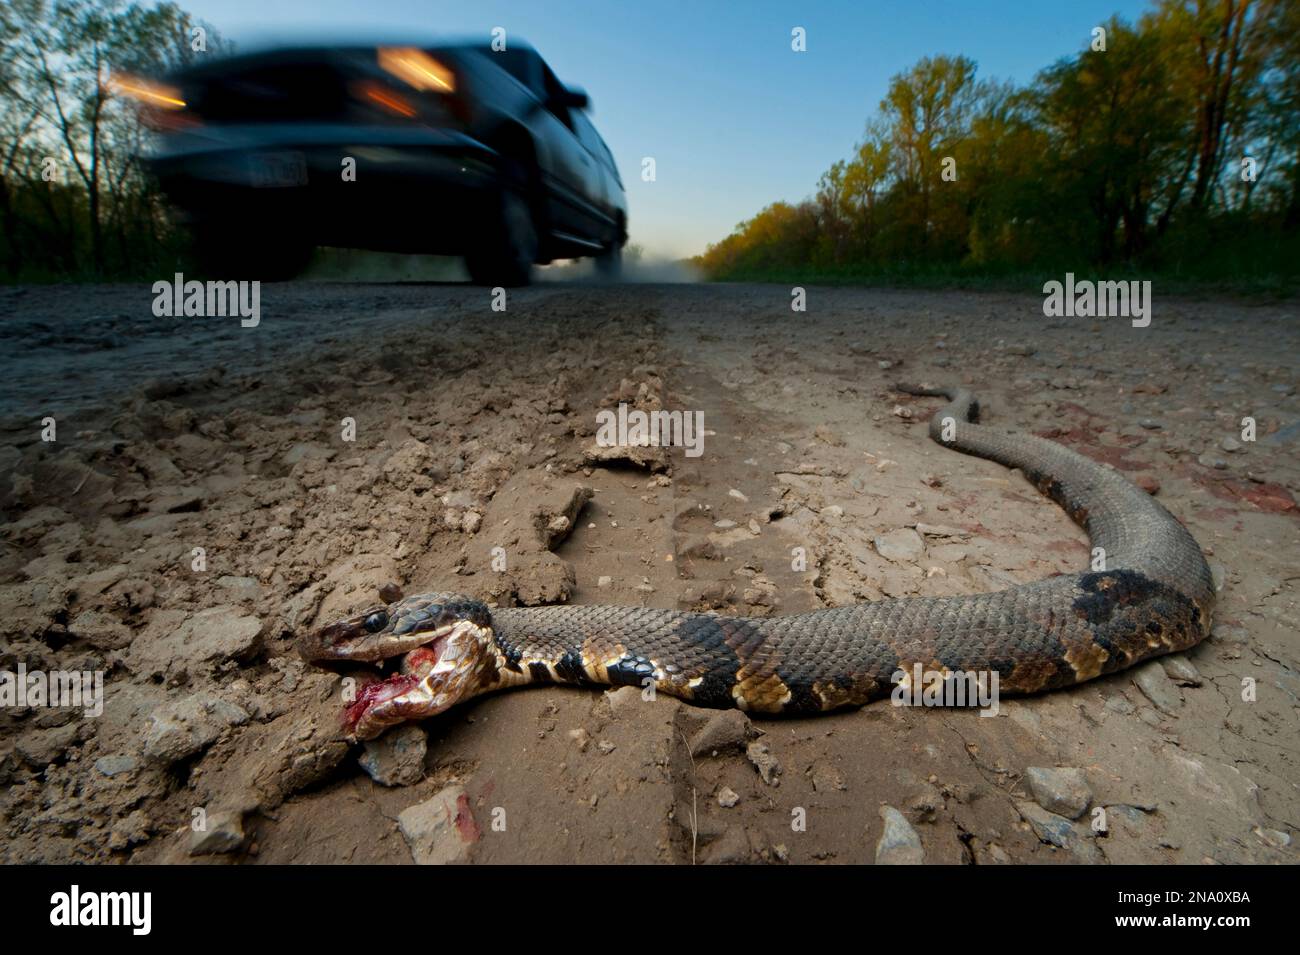 Un serpent à bouche blanche (Agkistrodon Piscivorus Leucostoma) n'a pas survécu au voyage à travers une route ; Ware, Illinois, États-Unis d'Amérique Banque D'Images